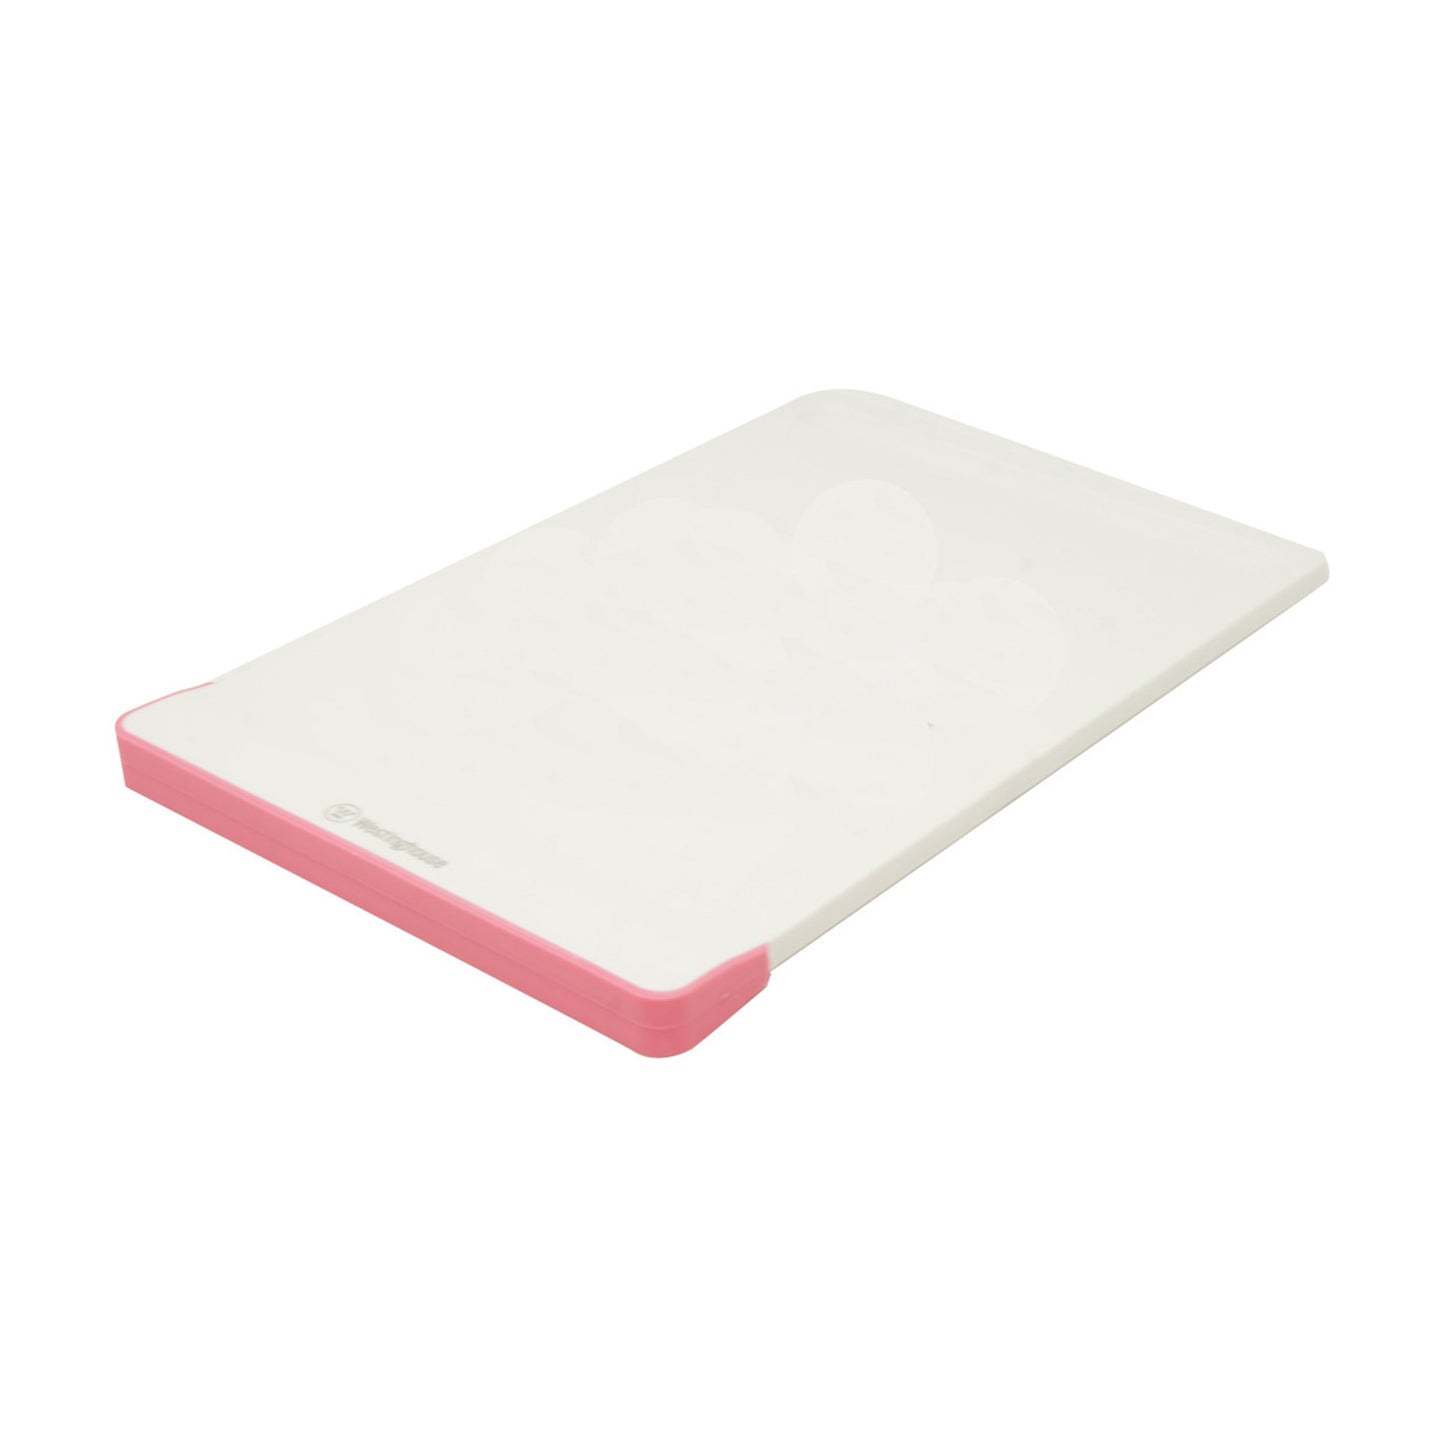 Tabla para Picar de Plástico (Blanco/Rosa) (21cm x 31.5cm x 1.8cm)